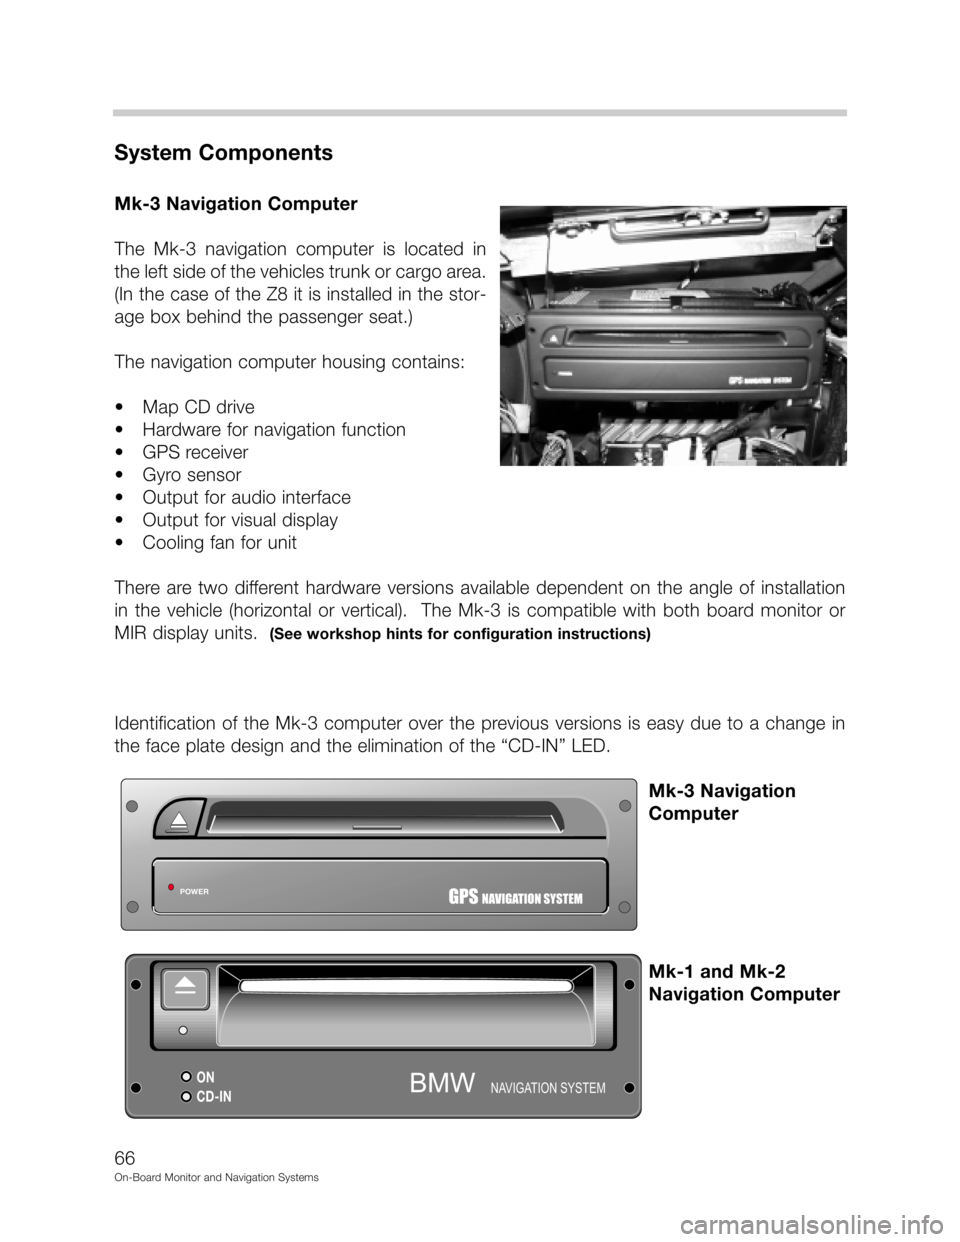 BMW 7 SERIES 1998 E38 On Board Monitor System Workshop Manual DD



"&
(	
-.2./!!
	0", 1" !2./
# 9. 
&
 	
   
&
9
70
